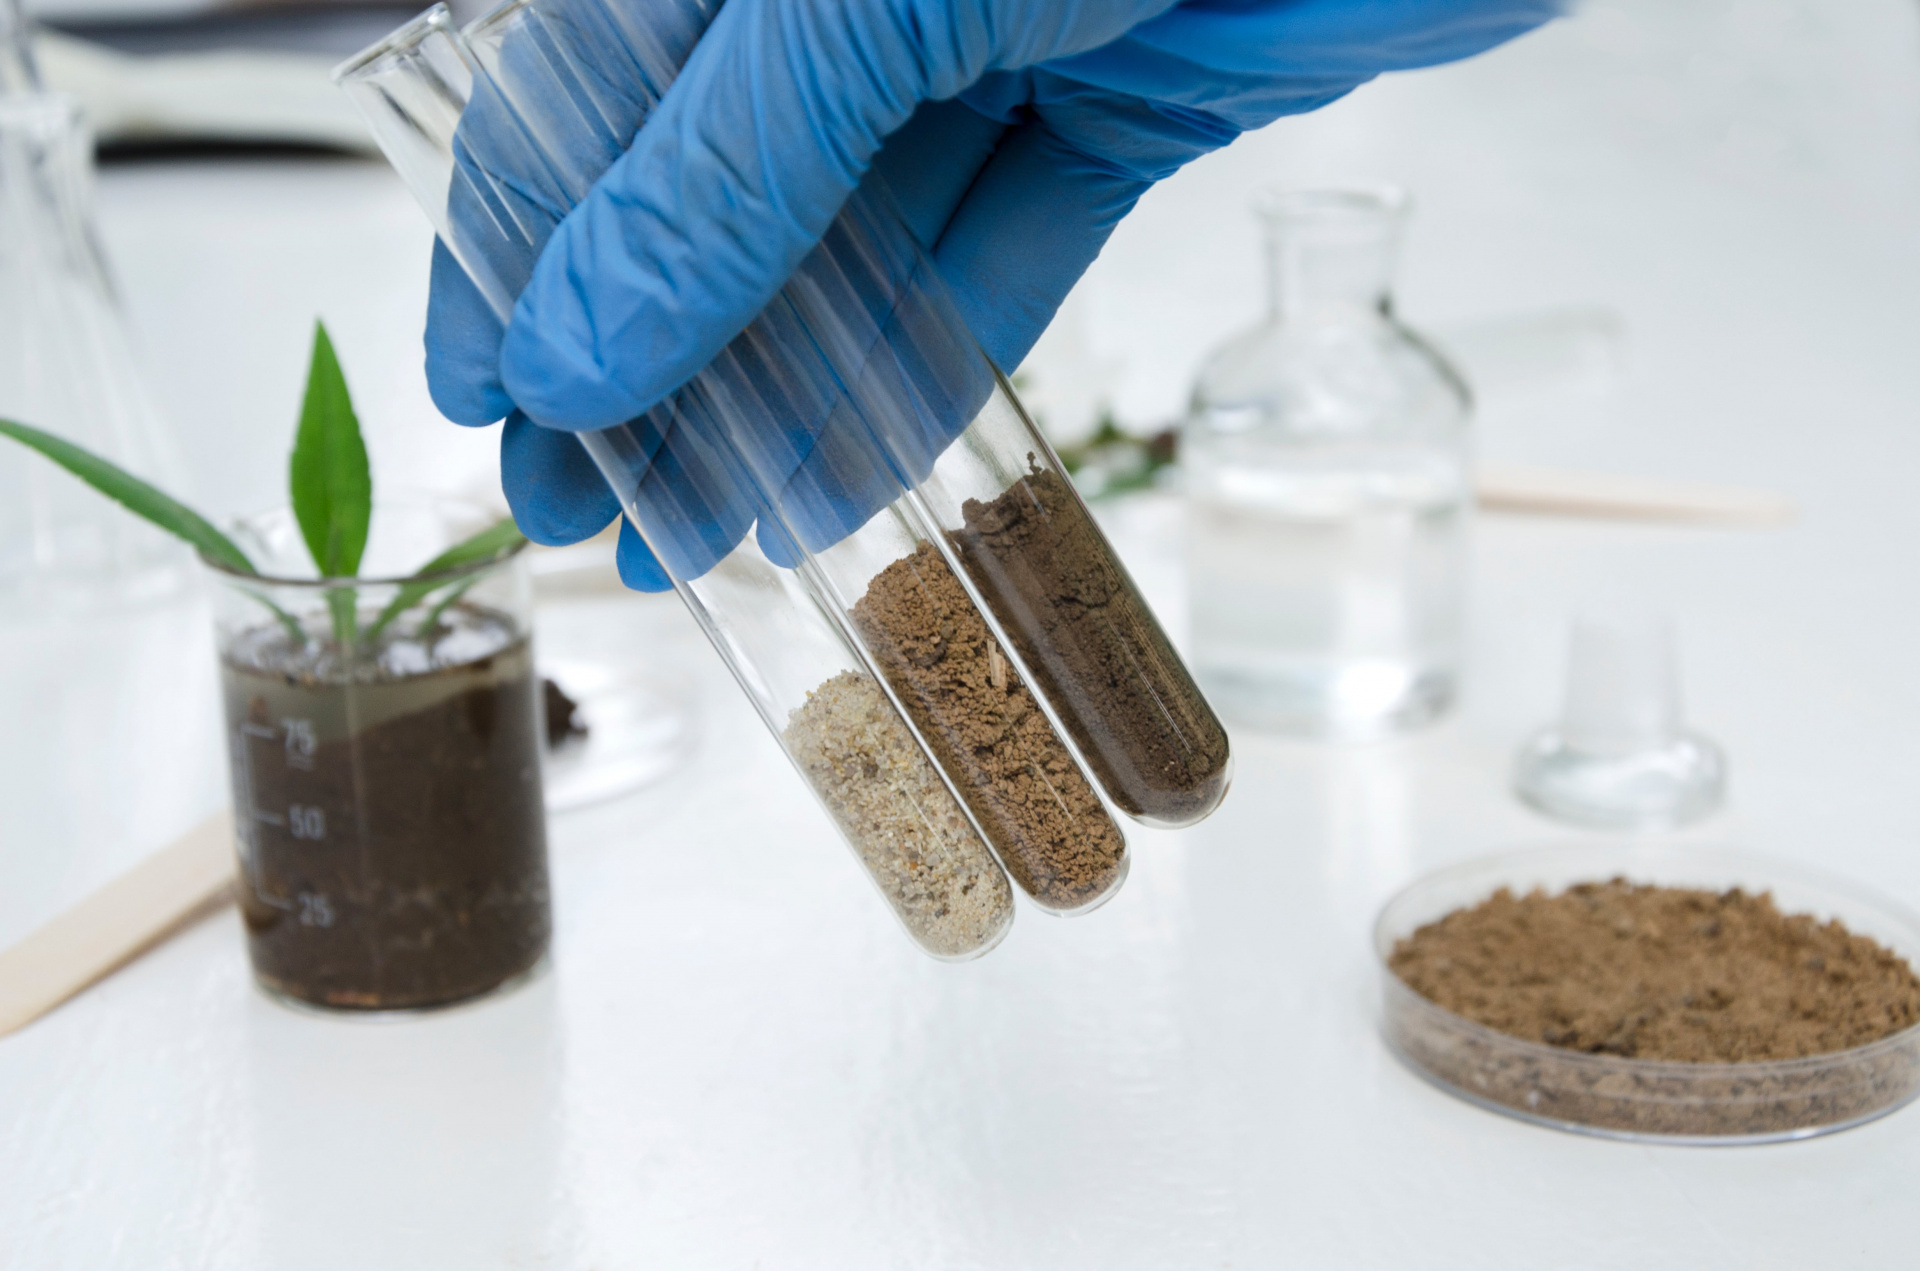 Специалистами лаборатории при проведении исследований проб почвы зарегистрированы нарушения требований санитарных правил и норм